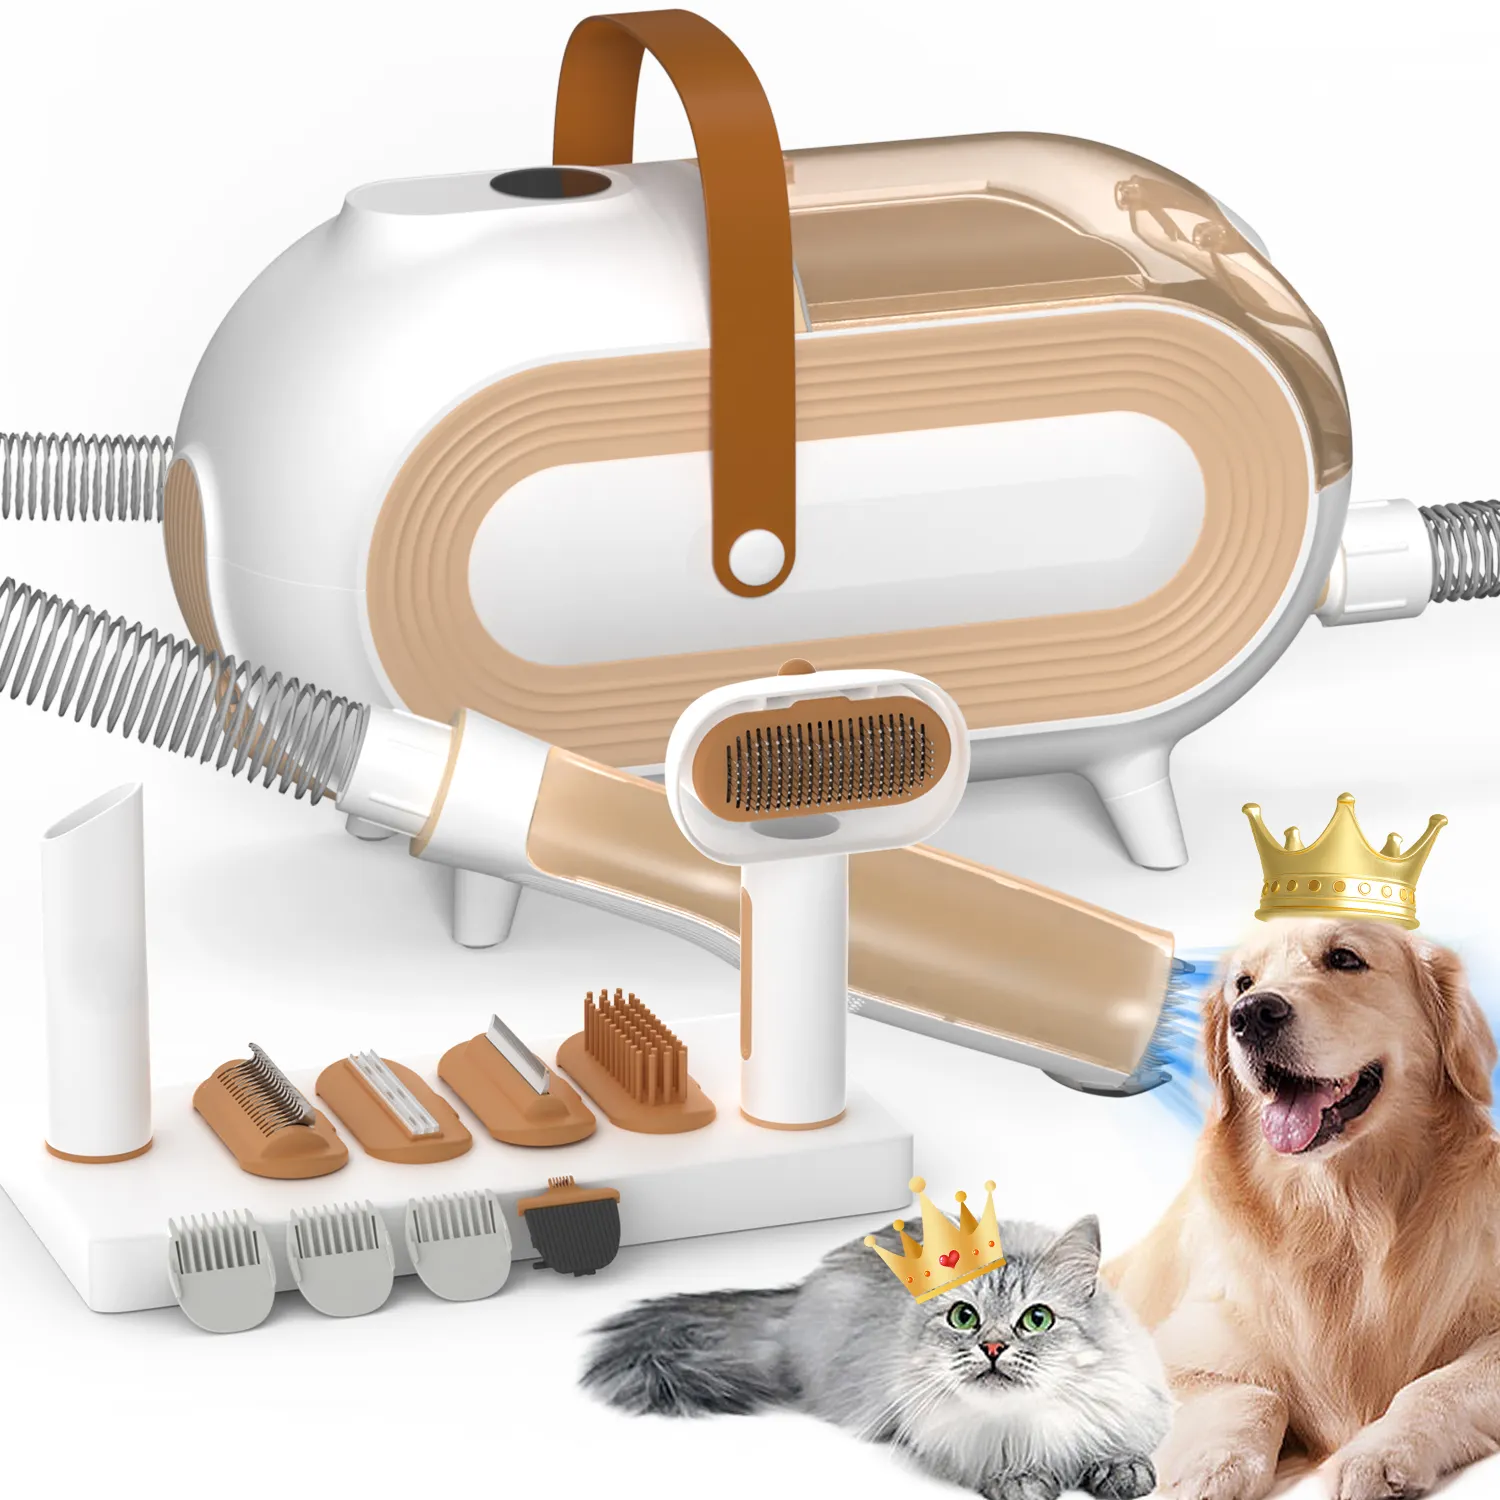 Tondeuses à cheveux électriques multifonctions professionnelles pour animaux de compagnie tondeuse pour chien épilateur pour chat aspirateur pour animaux kit de toilettage